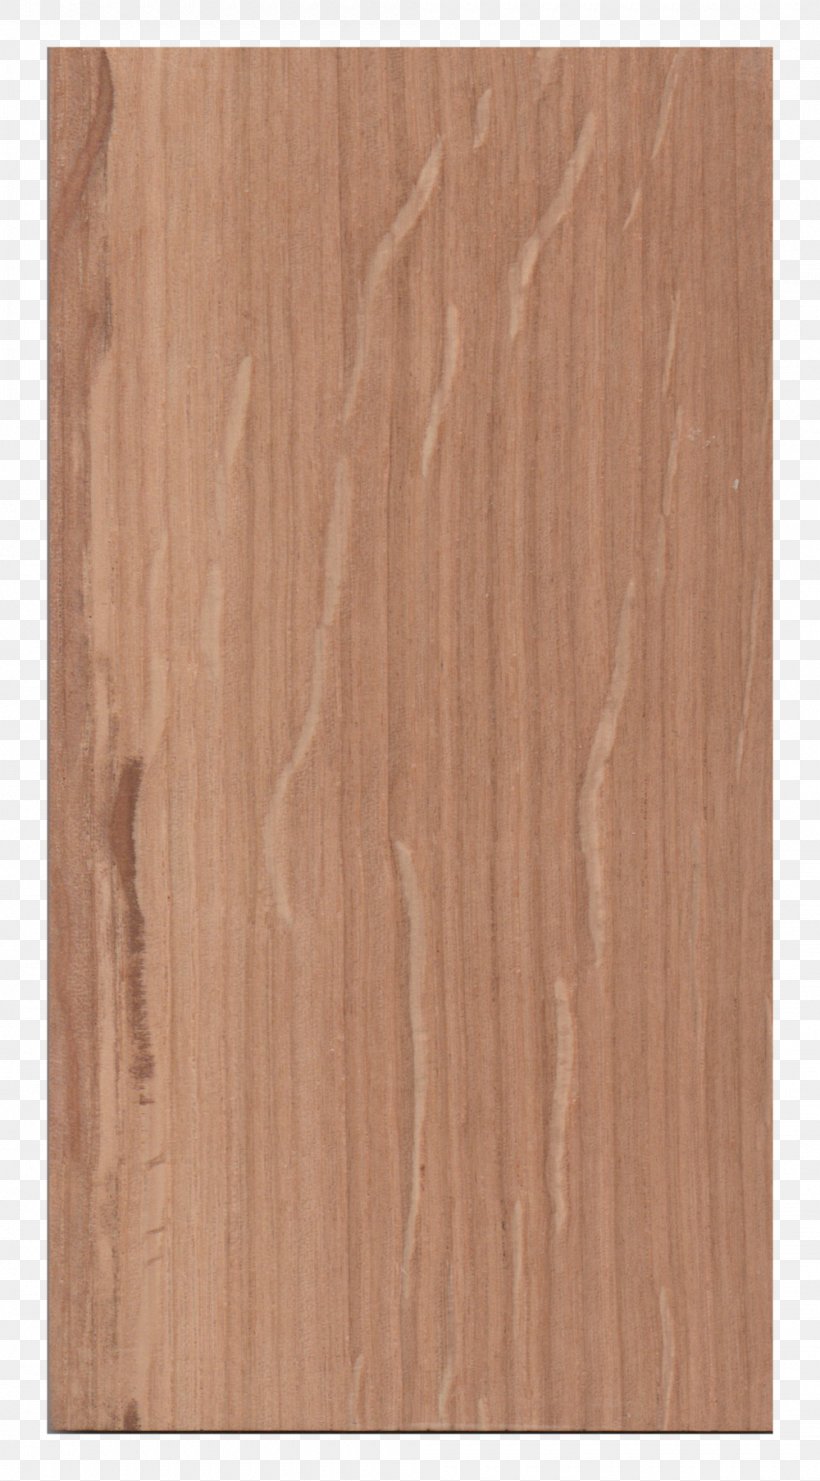 Hardwood Wood Flooring Laminate Flooring, PNG, 1000x1807px, Hardwood, Floor, Flooring, Laminate Flooring, Lamination Download Free